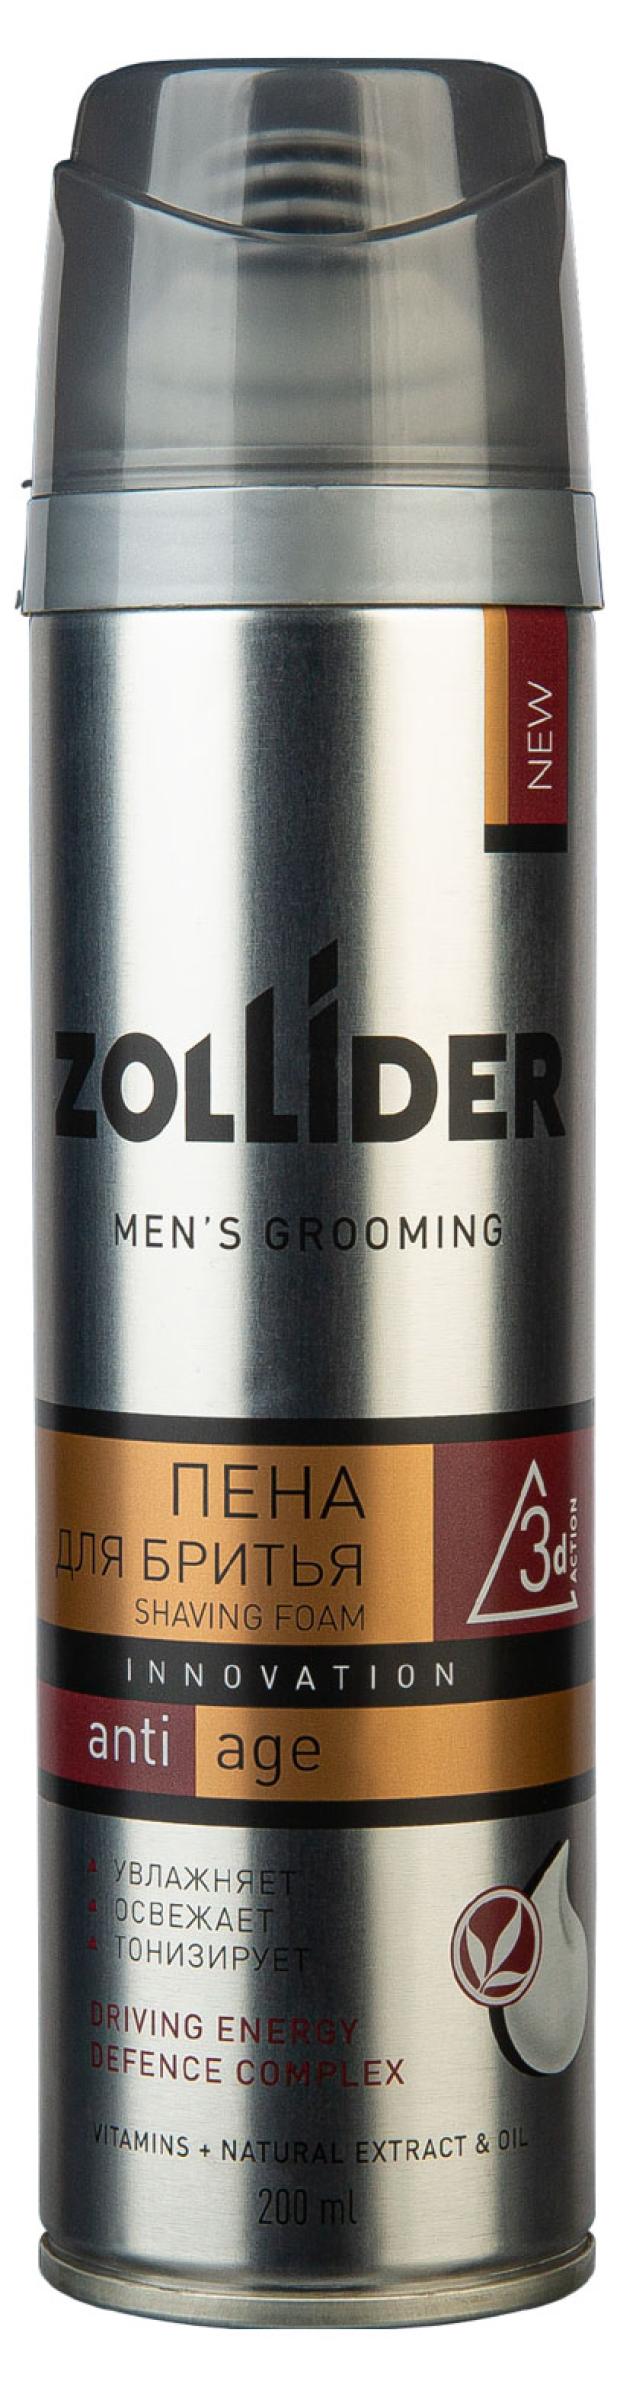 пена для бритья zollider anti-age для возрастной кожи